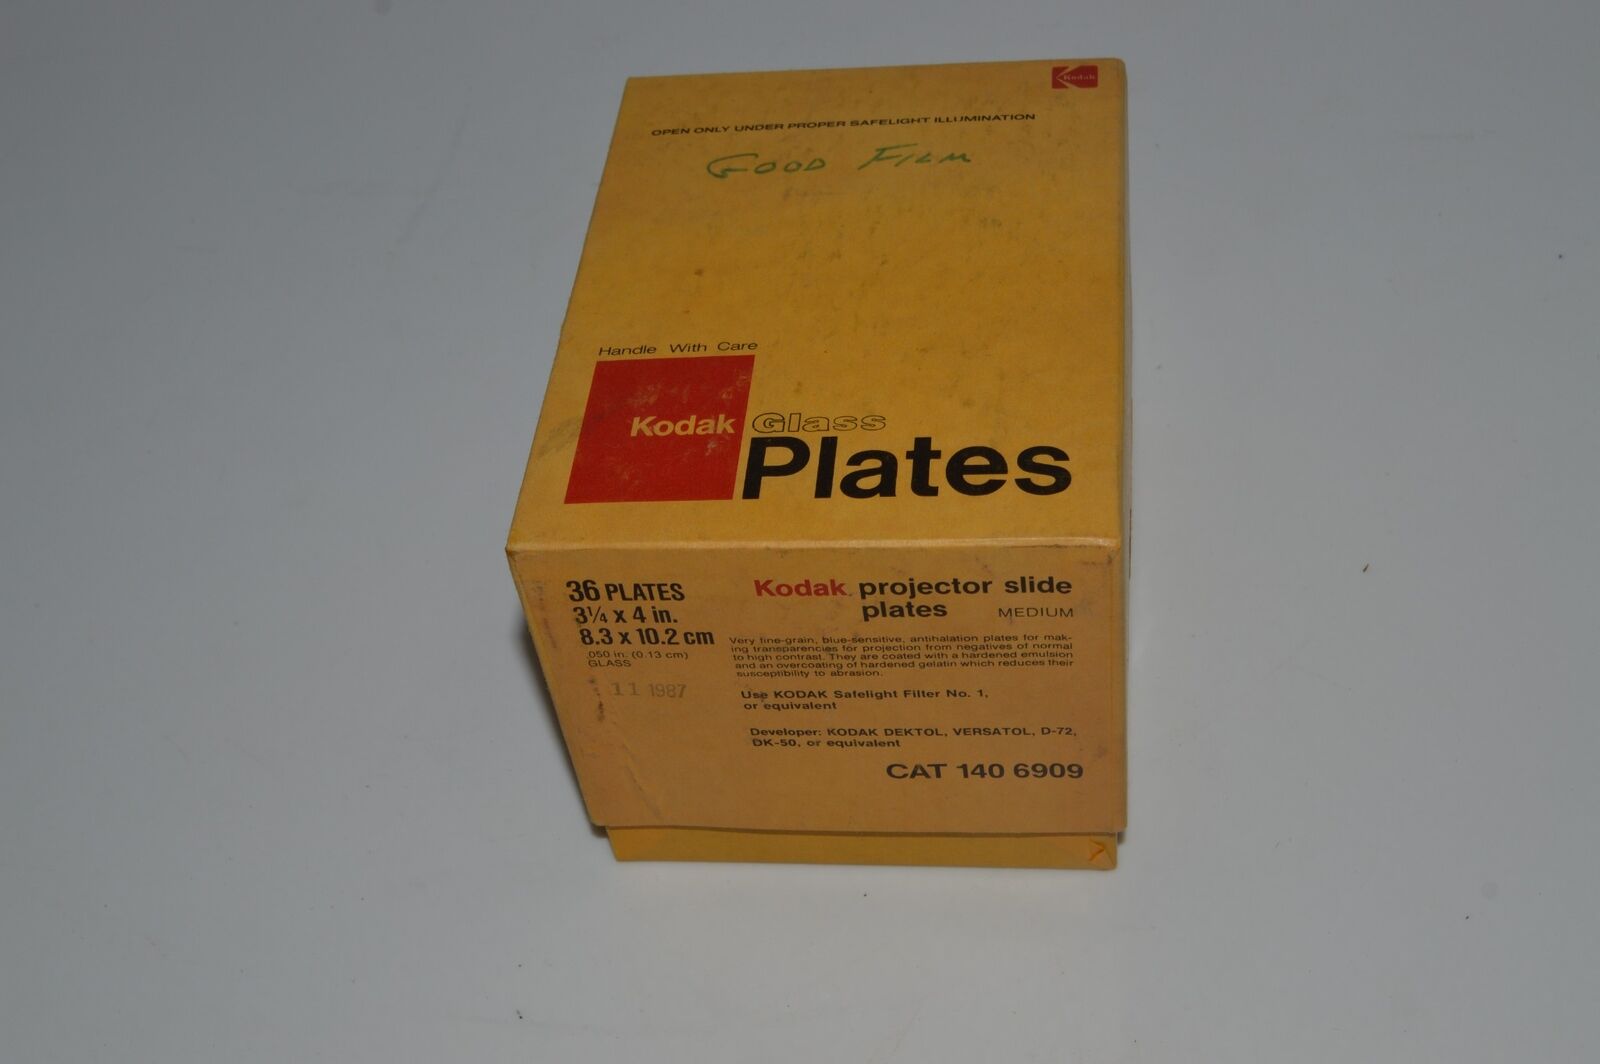 *TC* Kodak PROJECTOR SLIDE PLATES CAT 140 6909 31/4 X 4 - 28 PLATES  (FQM38)